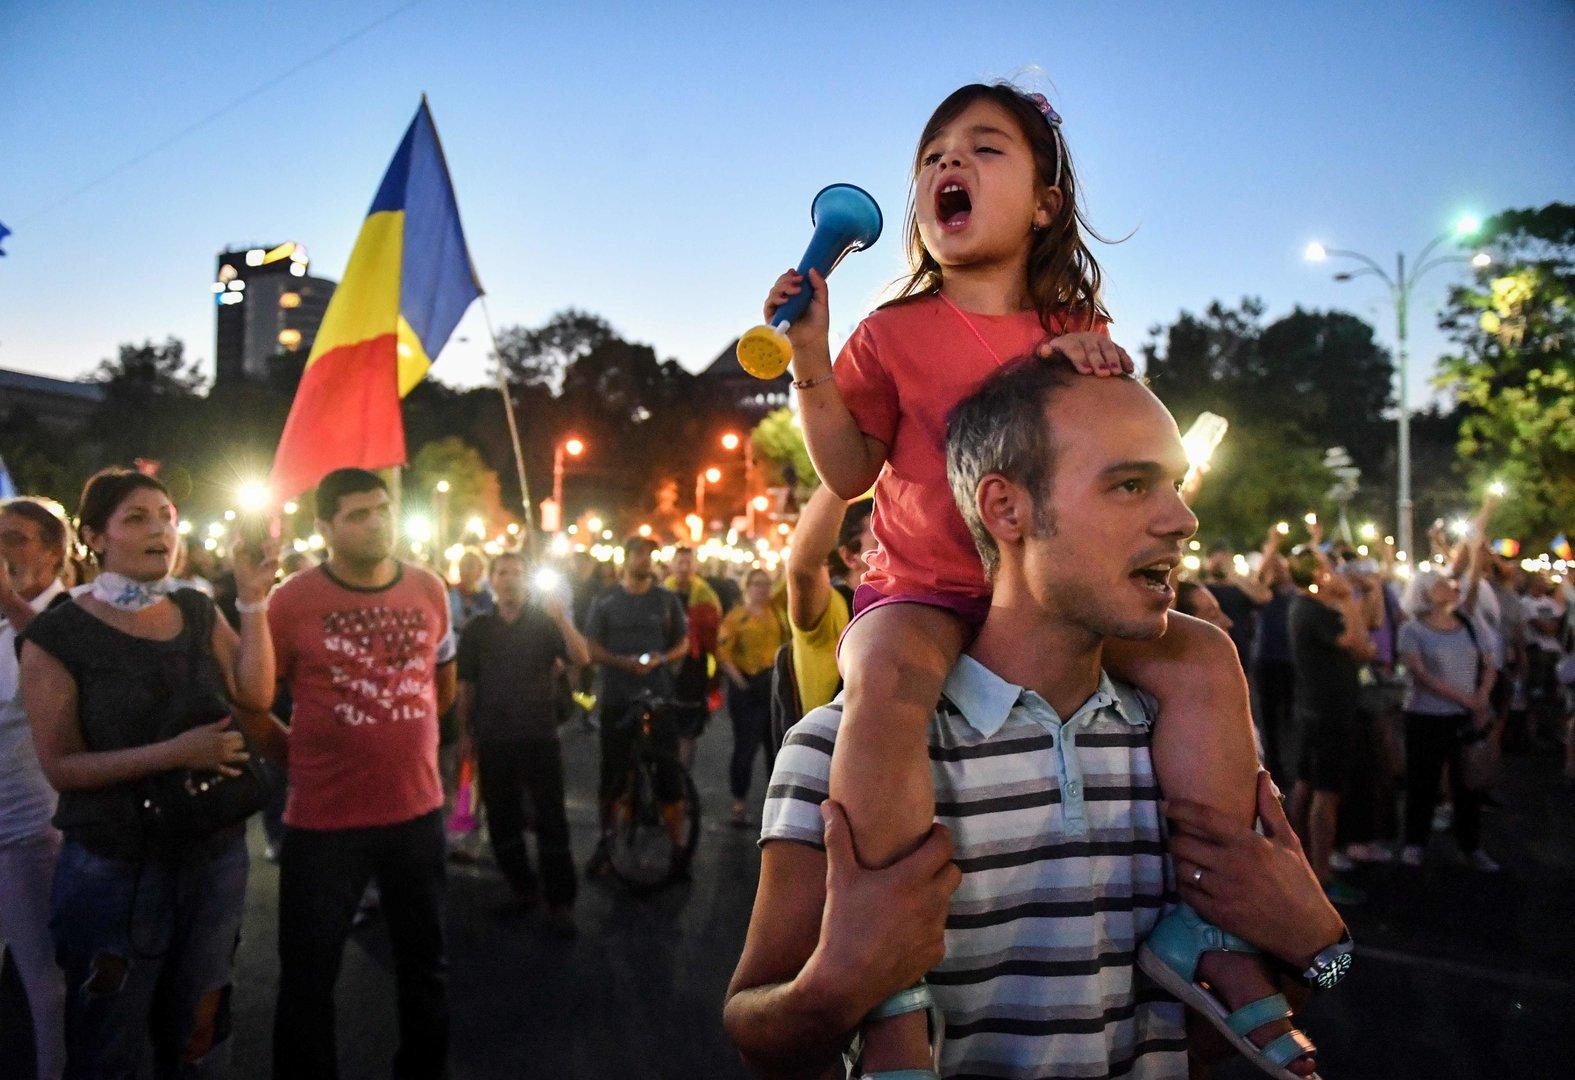 Der Aufstand gegen die alte Garde in Rumänien